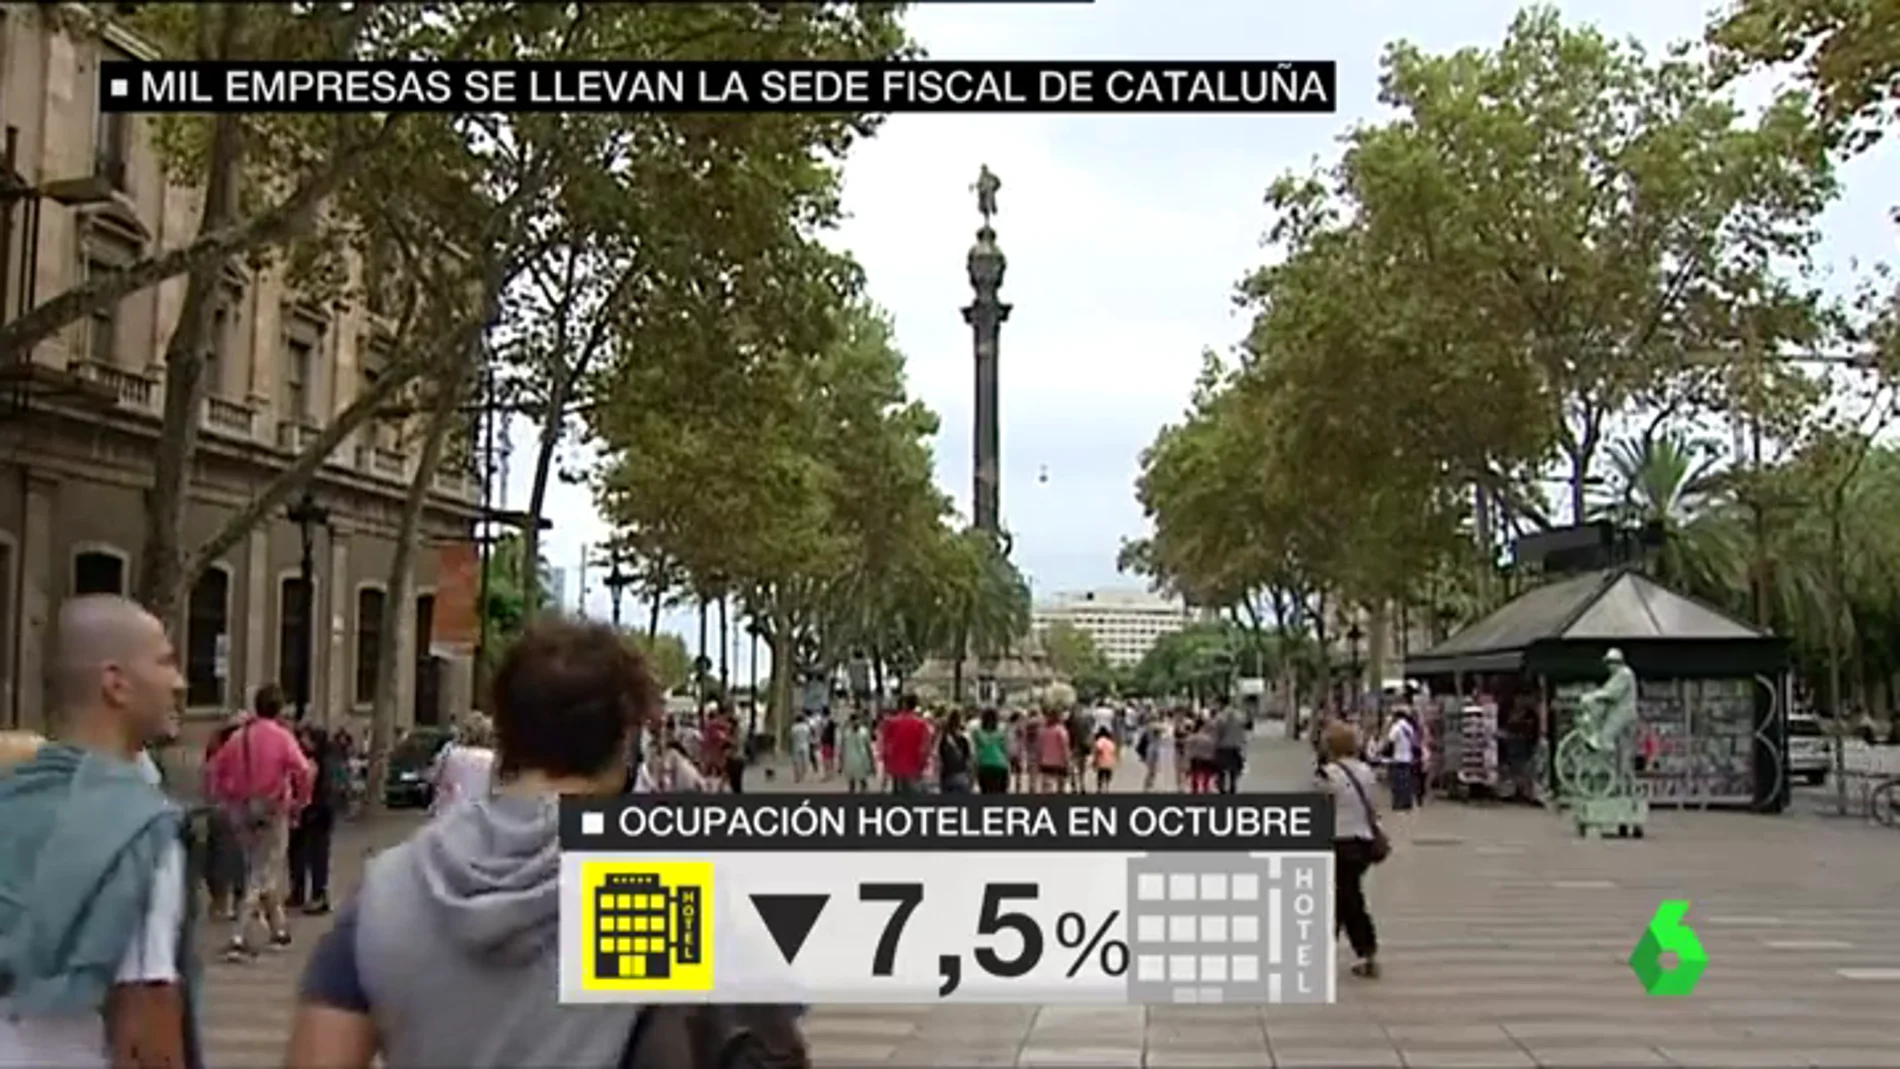 El traslado de sede fiscal de 1000 empresas fuera de Cataluña provoca una caída del 13% en los ingresos hoteleros en la comunidad   